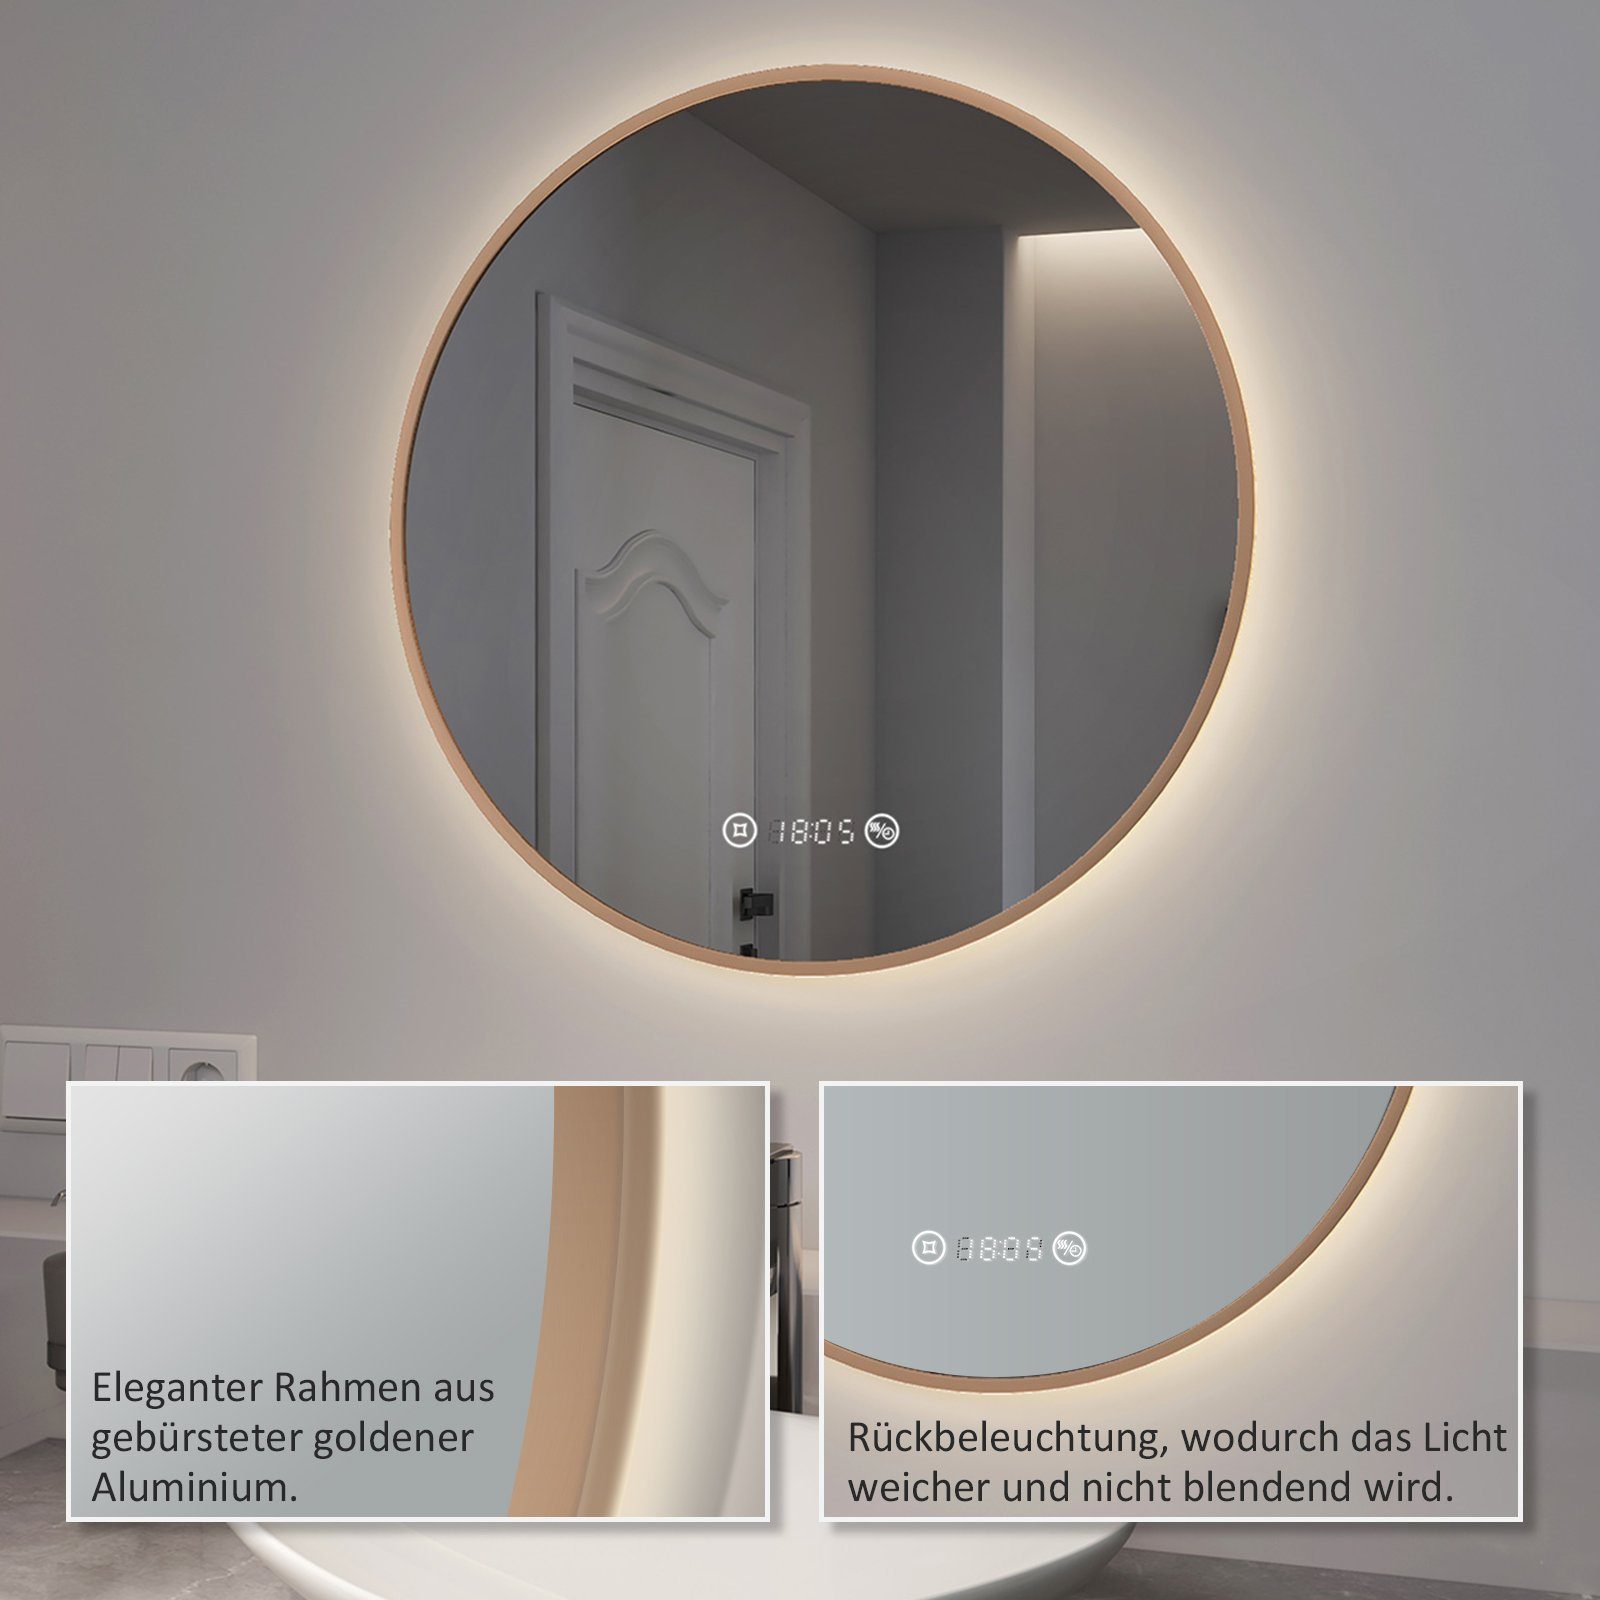 EMKE Badspiegel EMKE LED Gold, Touch, mit Memory-Funktion Badspiegel Antibeschlage, Temperatur, Dimmbar, mit Rund Spiegel Beleuchtung Uhr